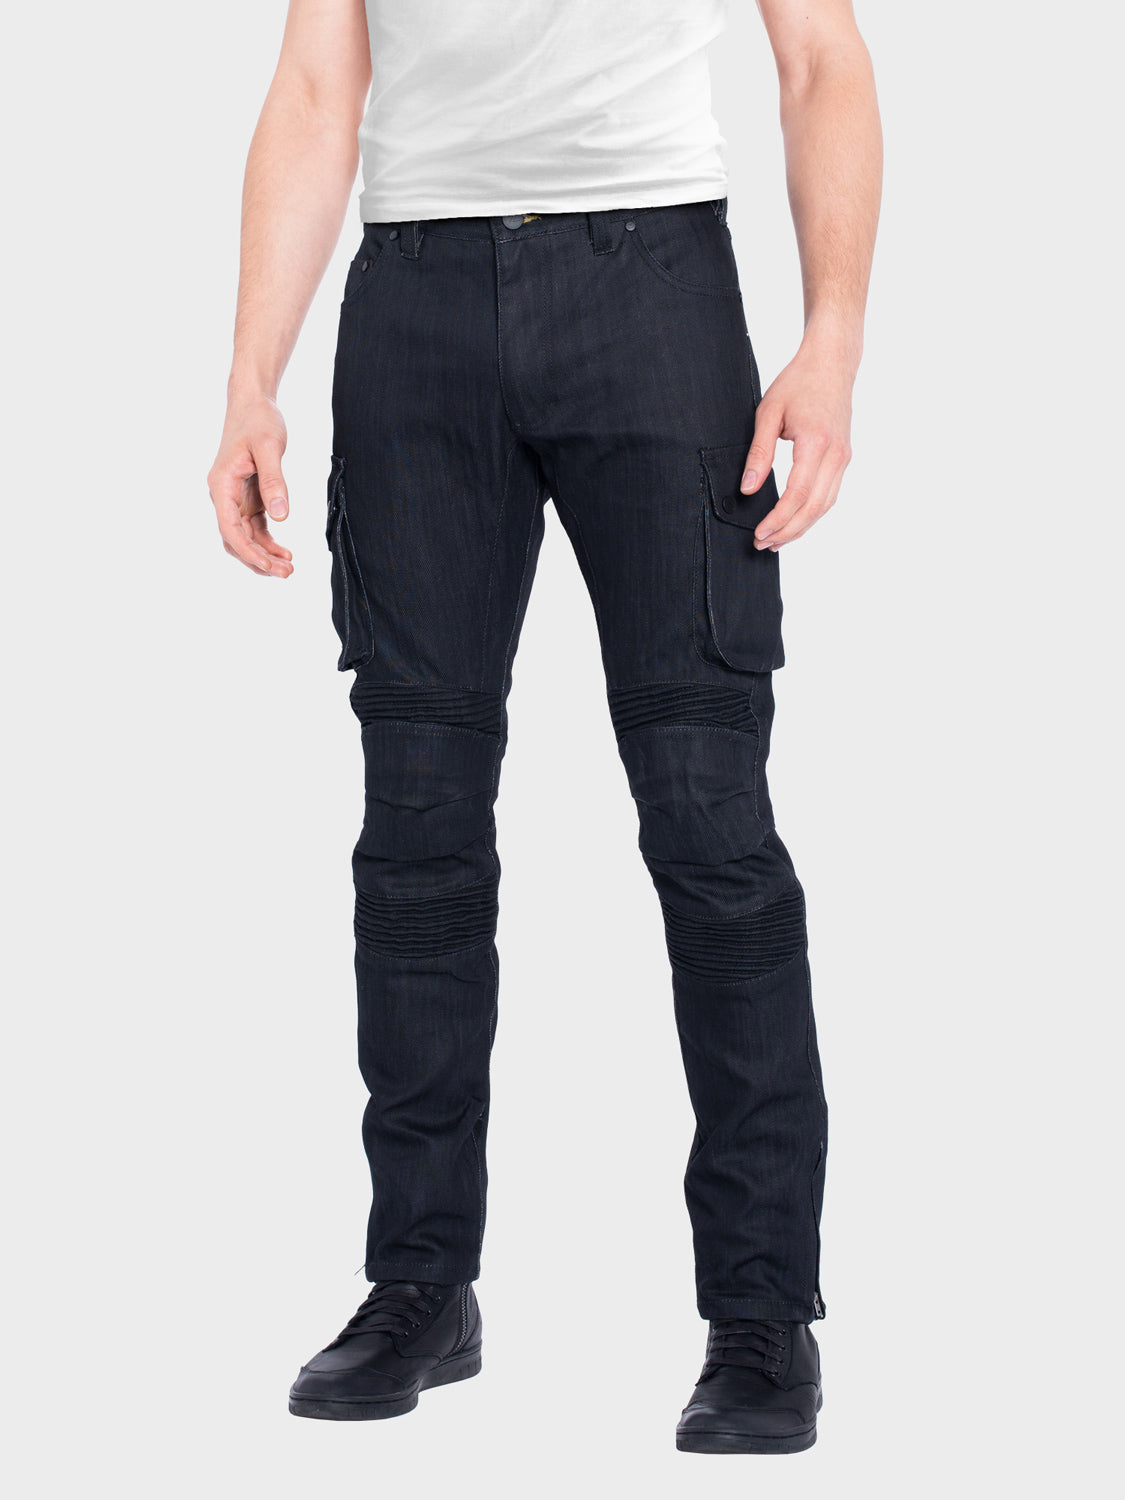 CITY - Abrasion-Resistant Strong Denim Jeans - Black – ZIN Motowear